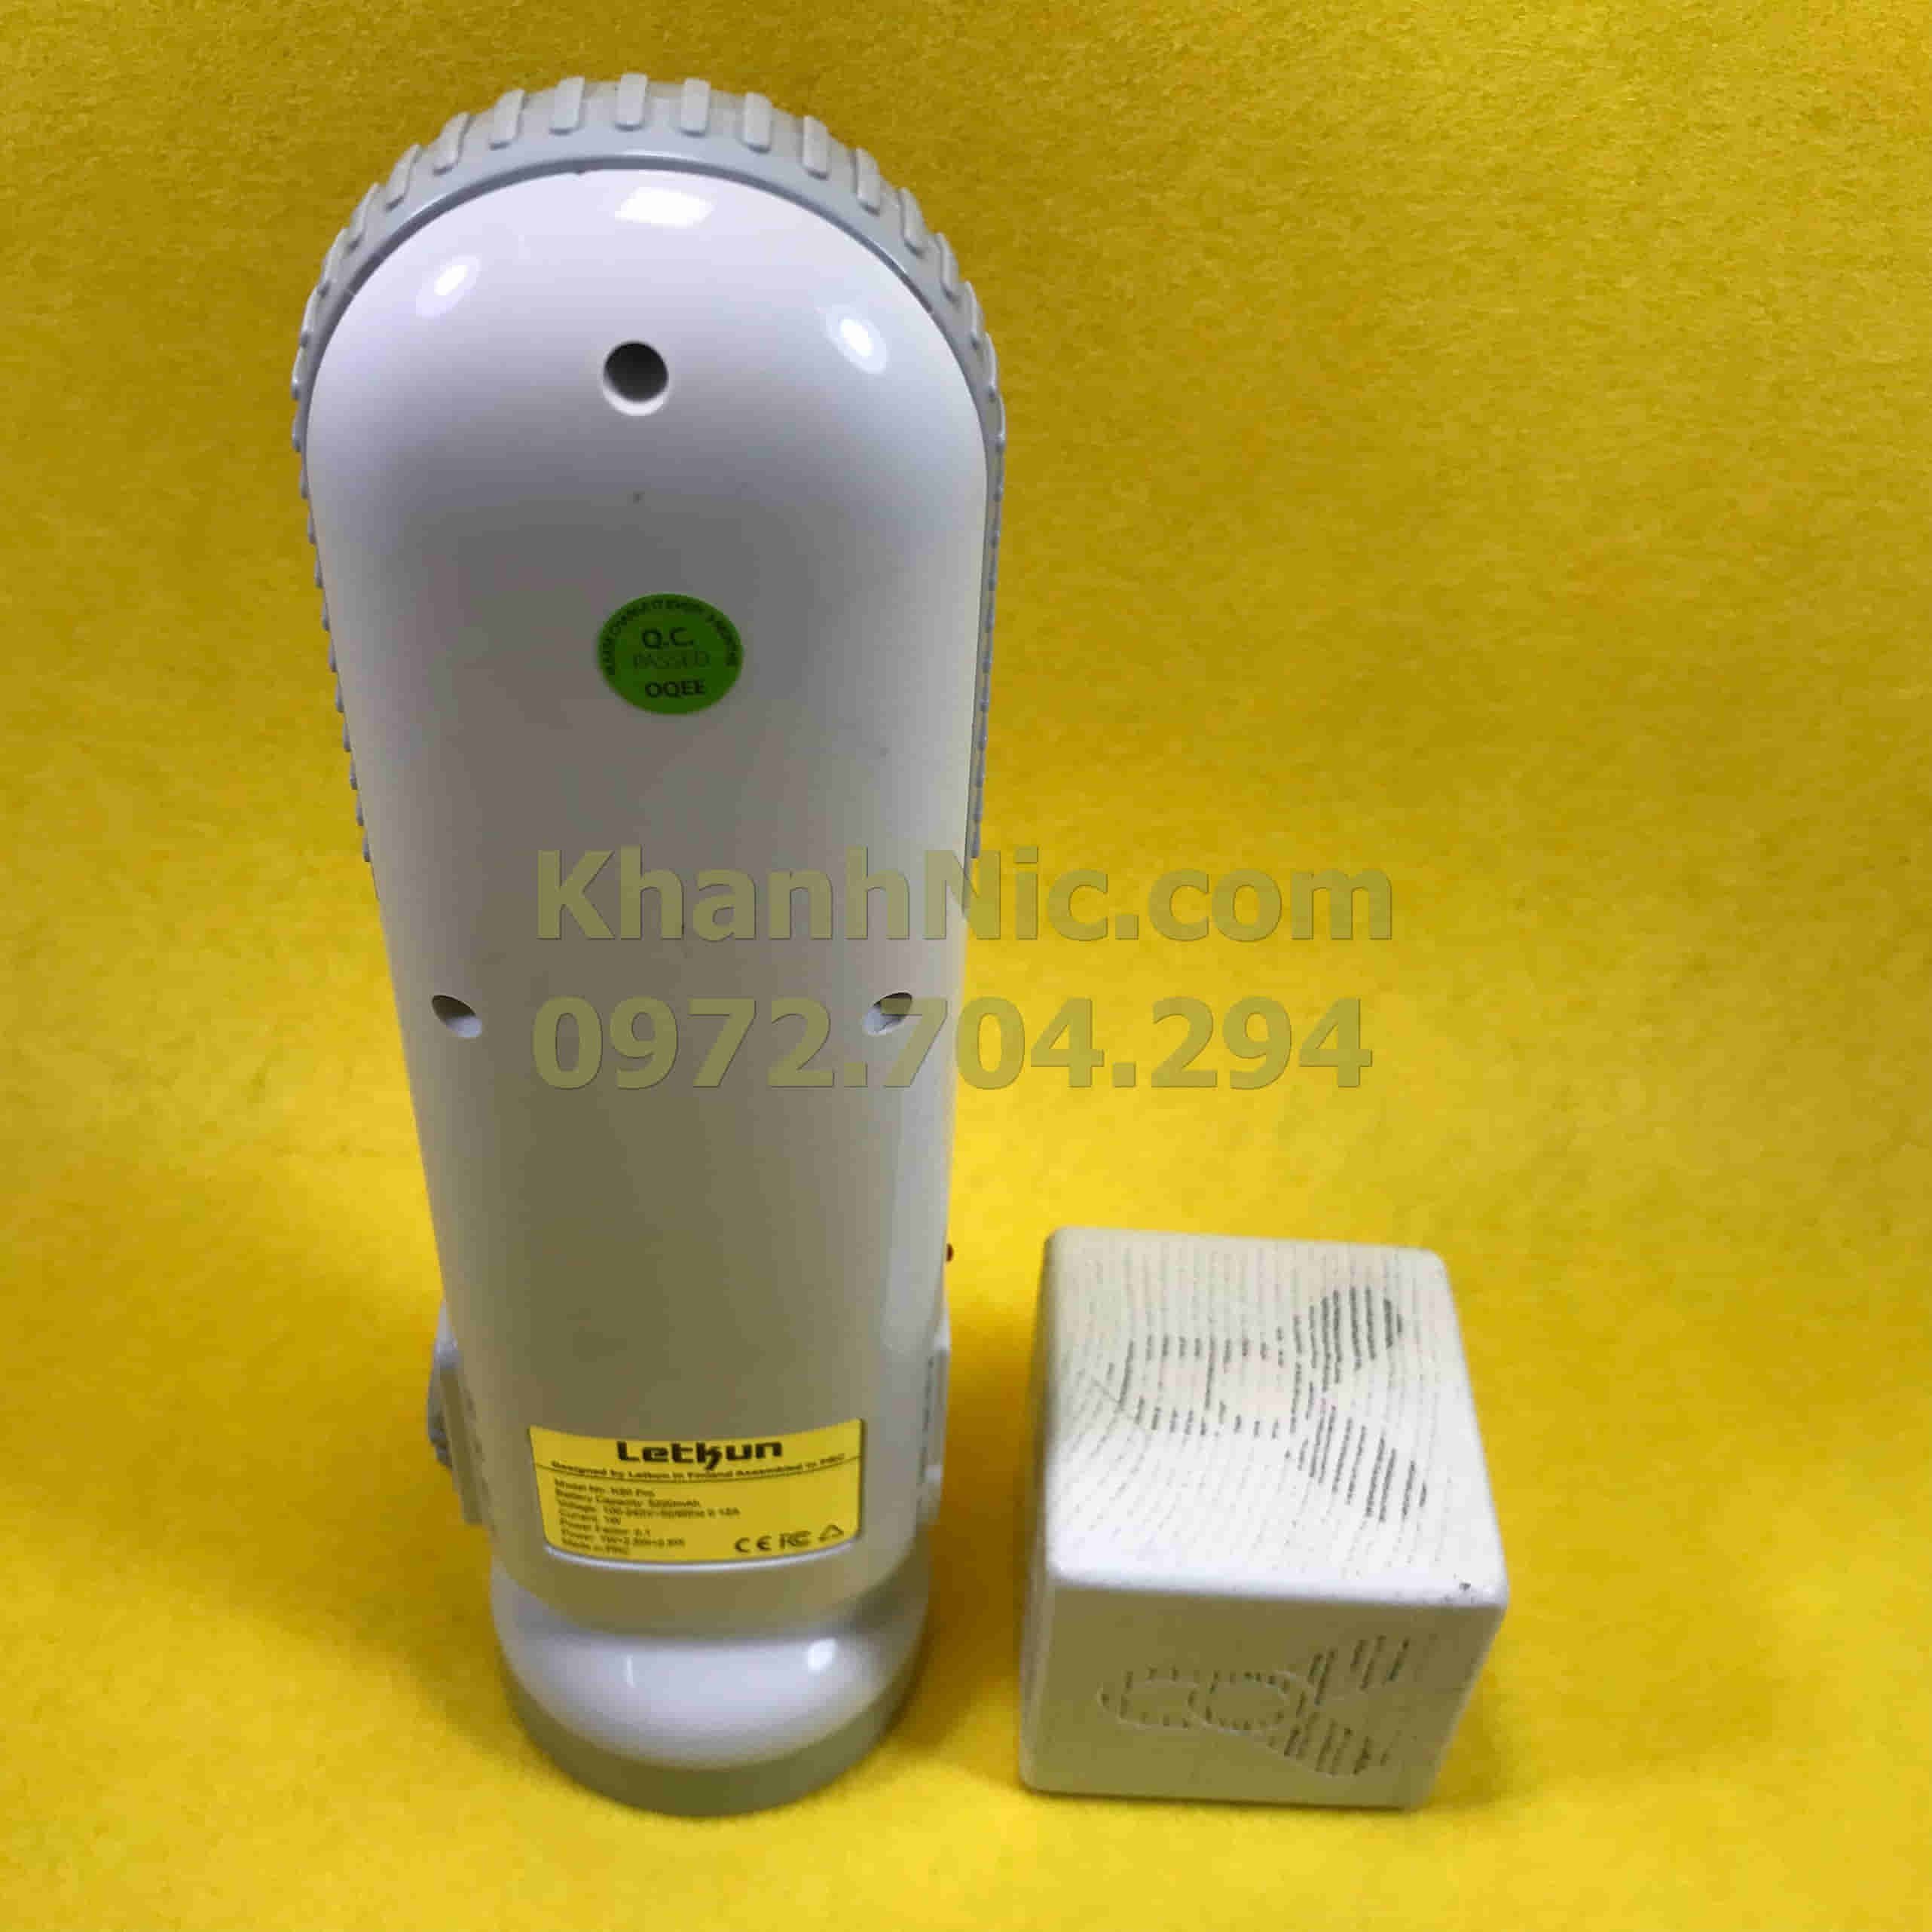 Đèn pin siêu sáng cao cấp 5 chế độ Letkun K80 Pro - Bảo hành 15 tháng